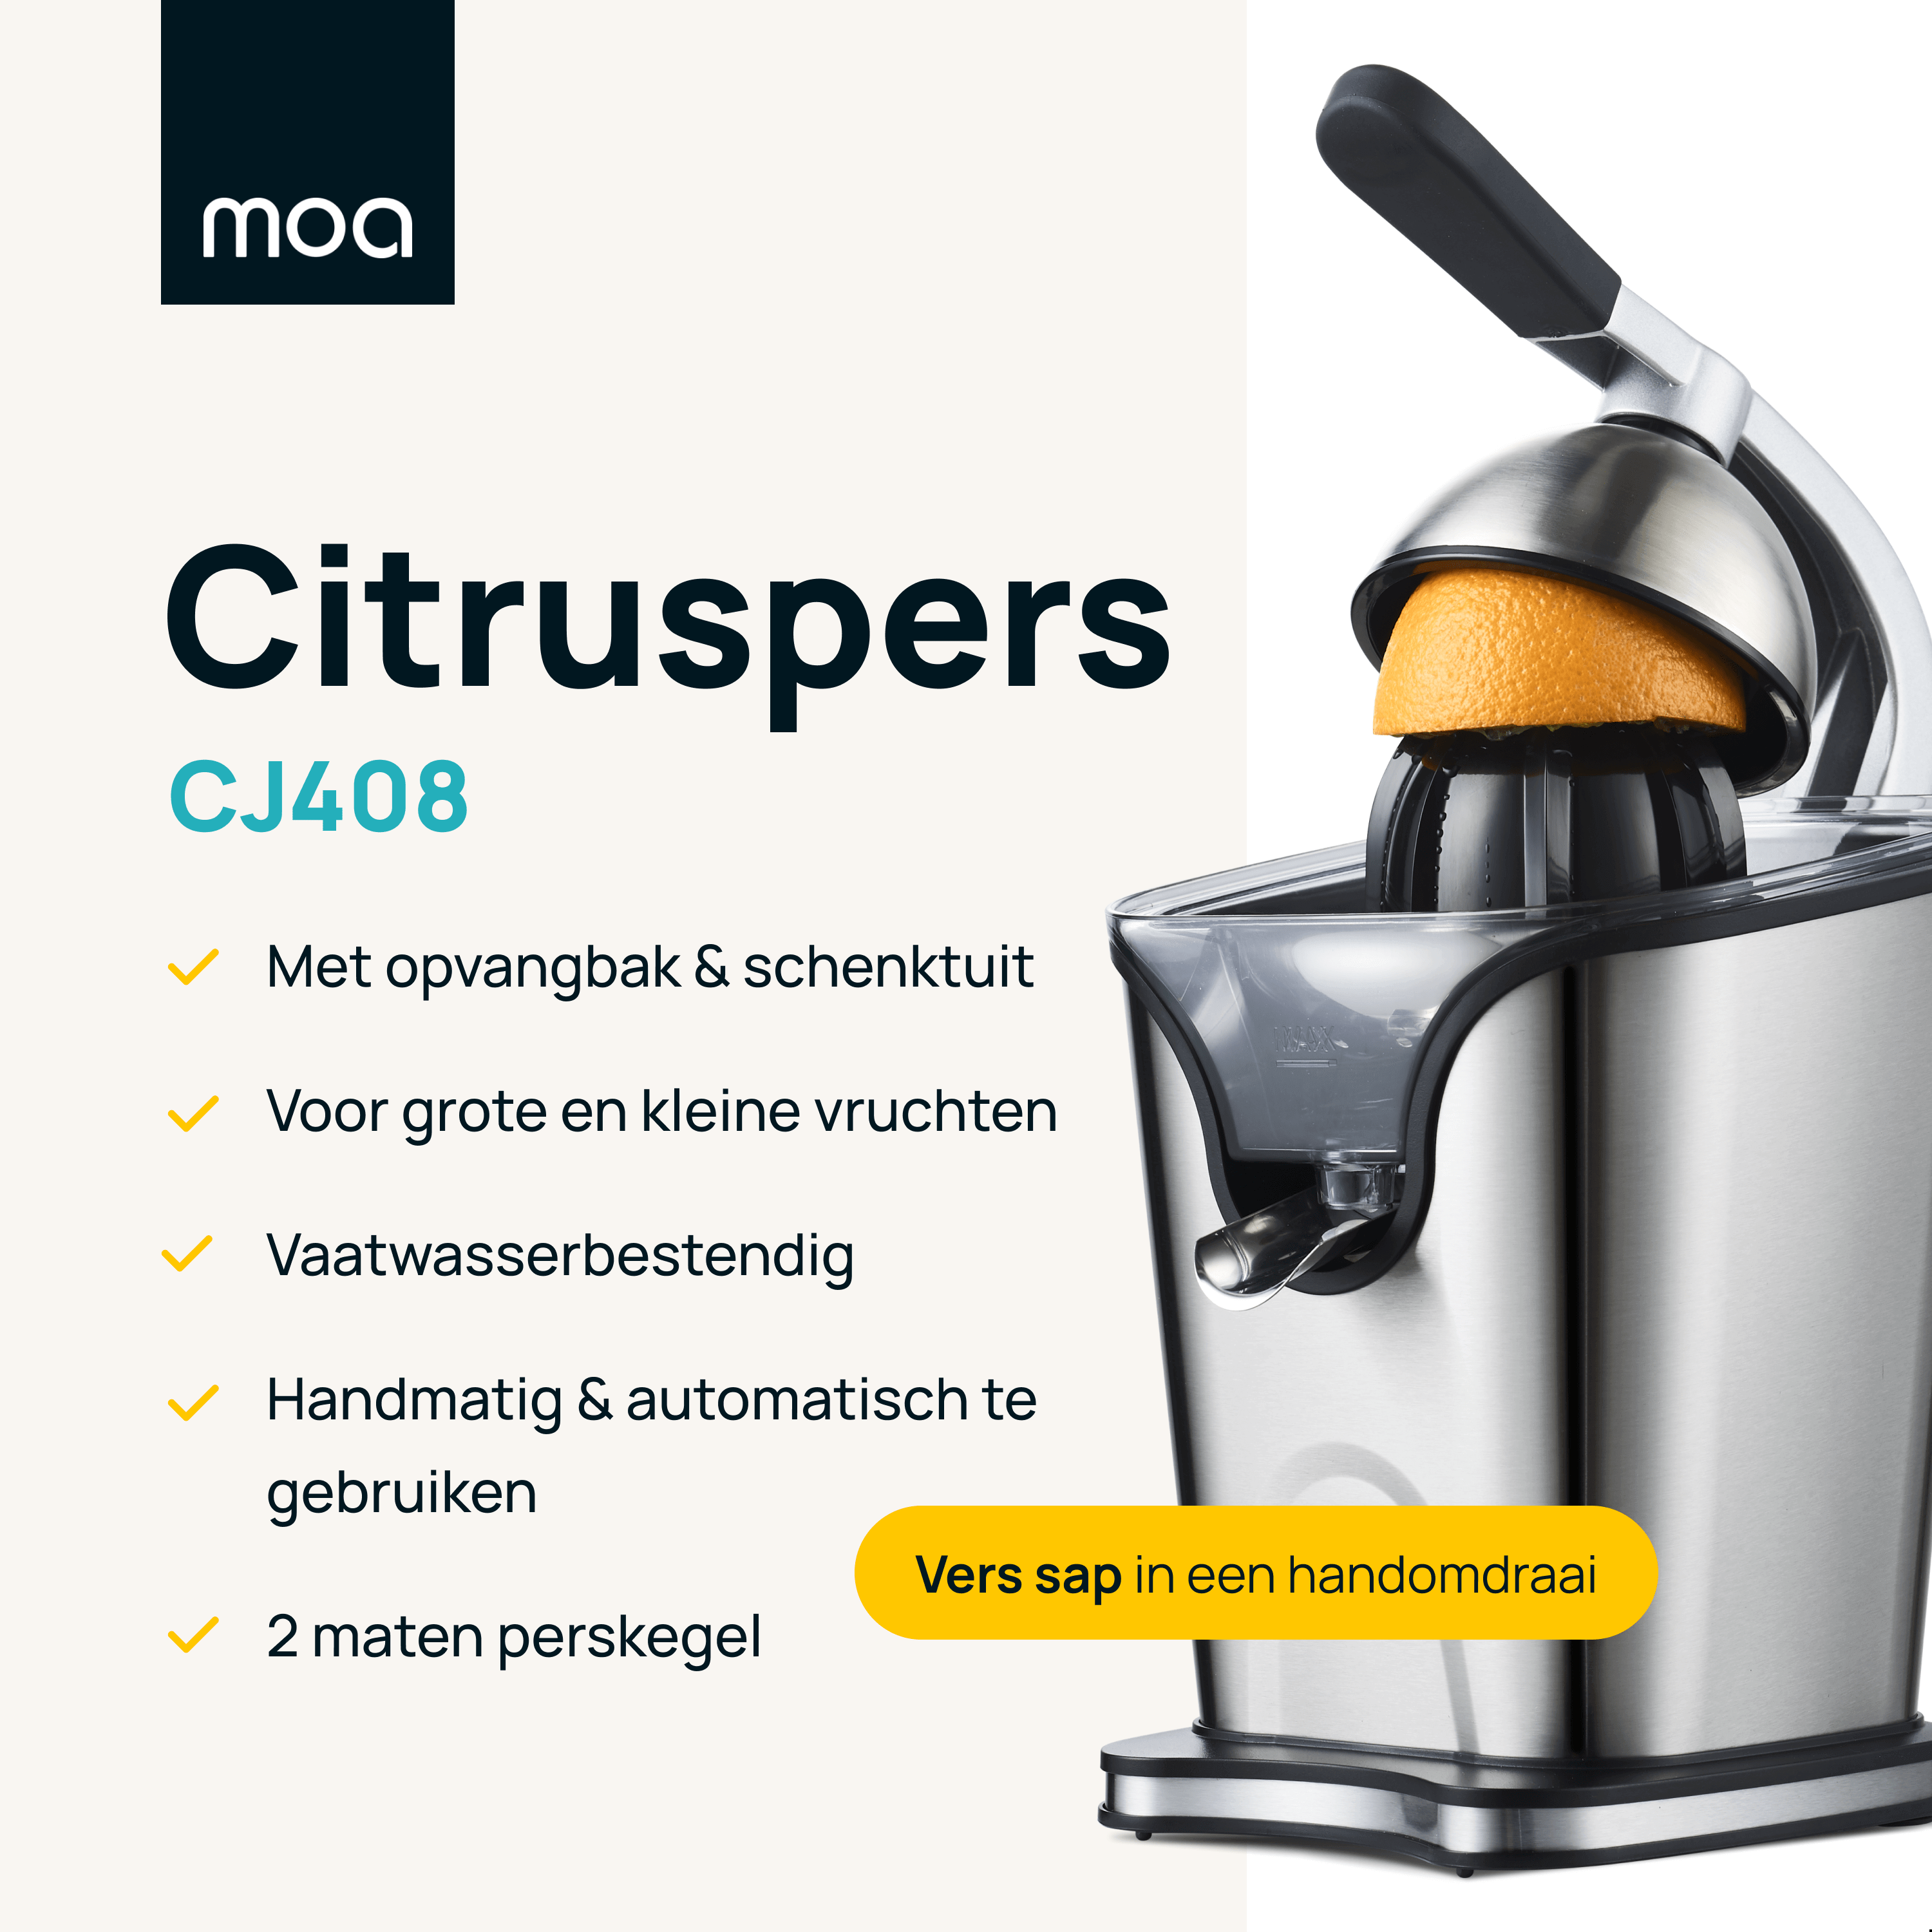 MOA Citruspers - CJ408